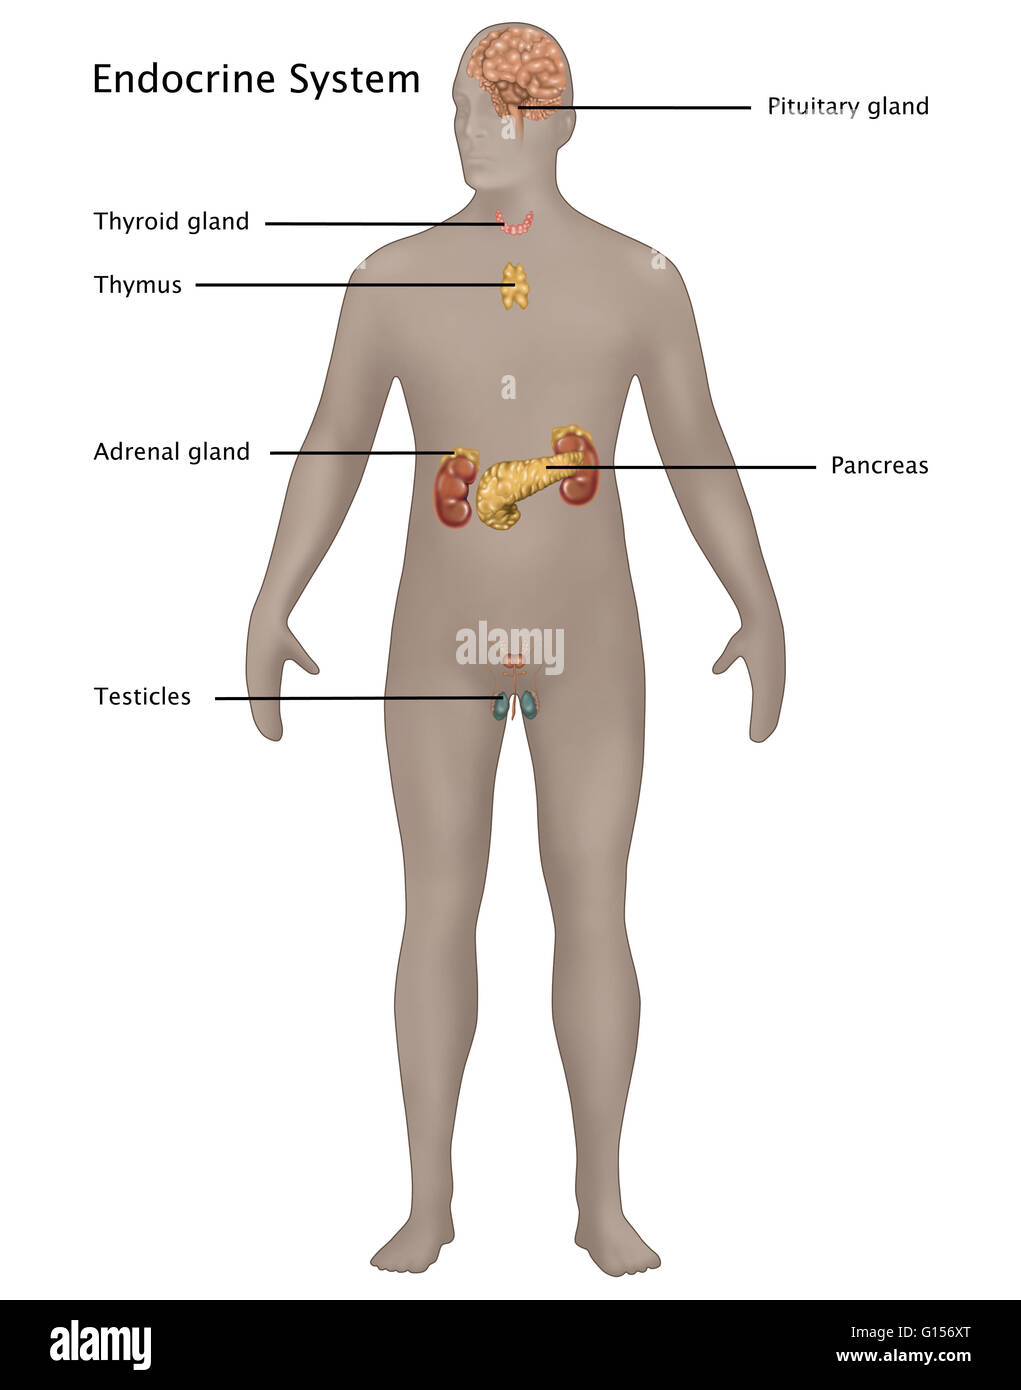 Illustrazione del sistema endocrino in anatomia maschile. Illustrato da  cima a fondo sono: ghiandola pituitaria, tiroide, timo, ghiandola  surrenale, il pancreas, e testicoli Foto stock - Alamy